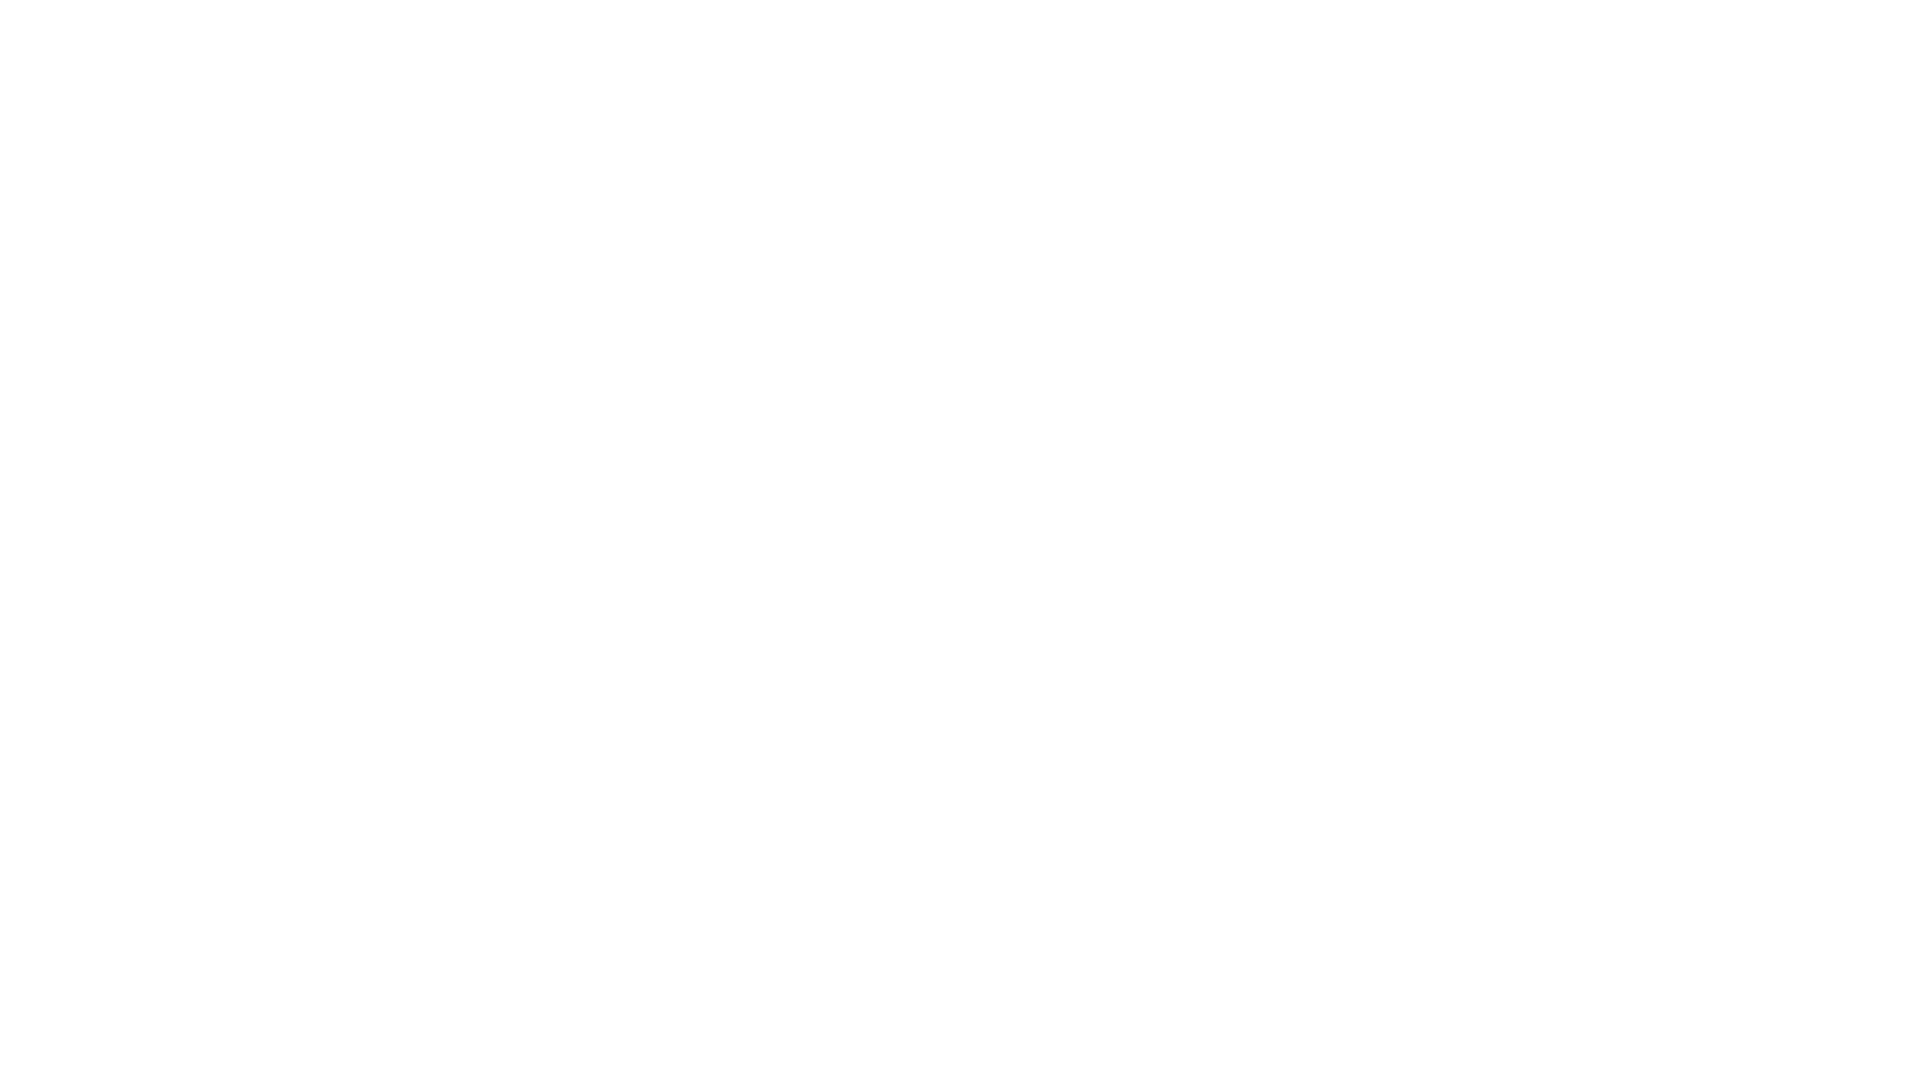 VR+ Necromancer Logo